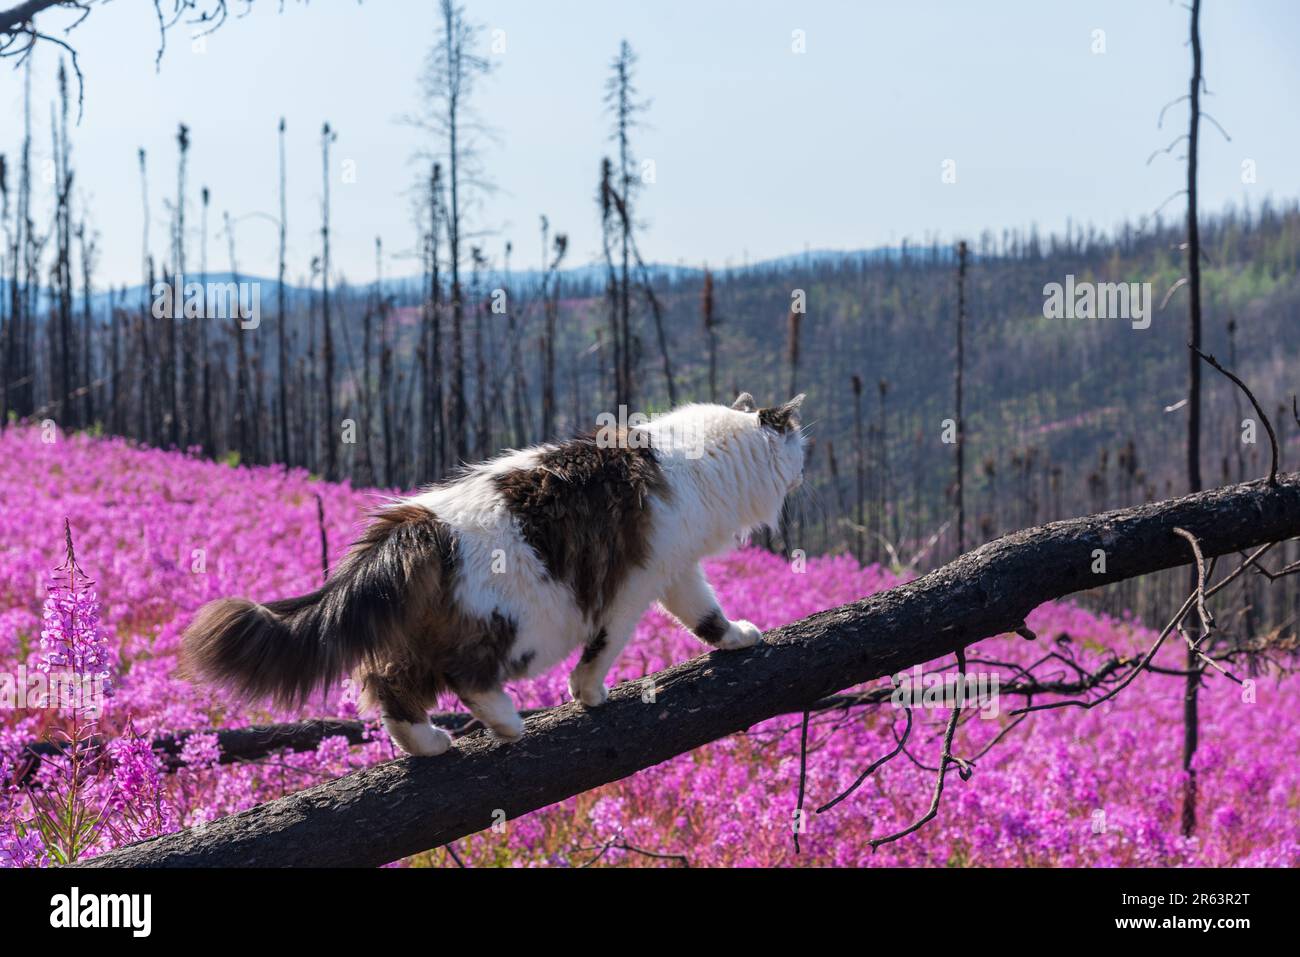 Die Katze wandert im Sommer in Nordkanada auf verbrannten, rosa Feuerweed-Blumen mit einer wunderschönen, rosa, lila Landschaft um die Katze herum Stockfoto